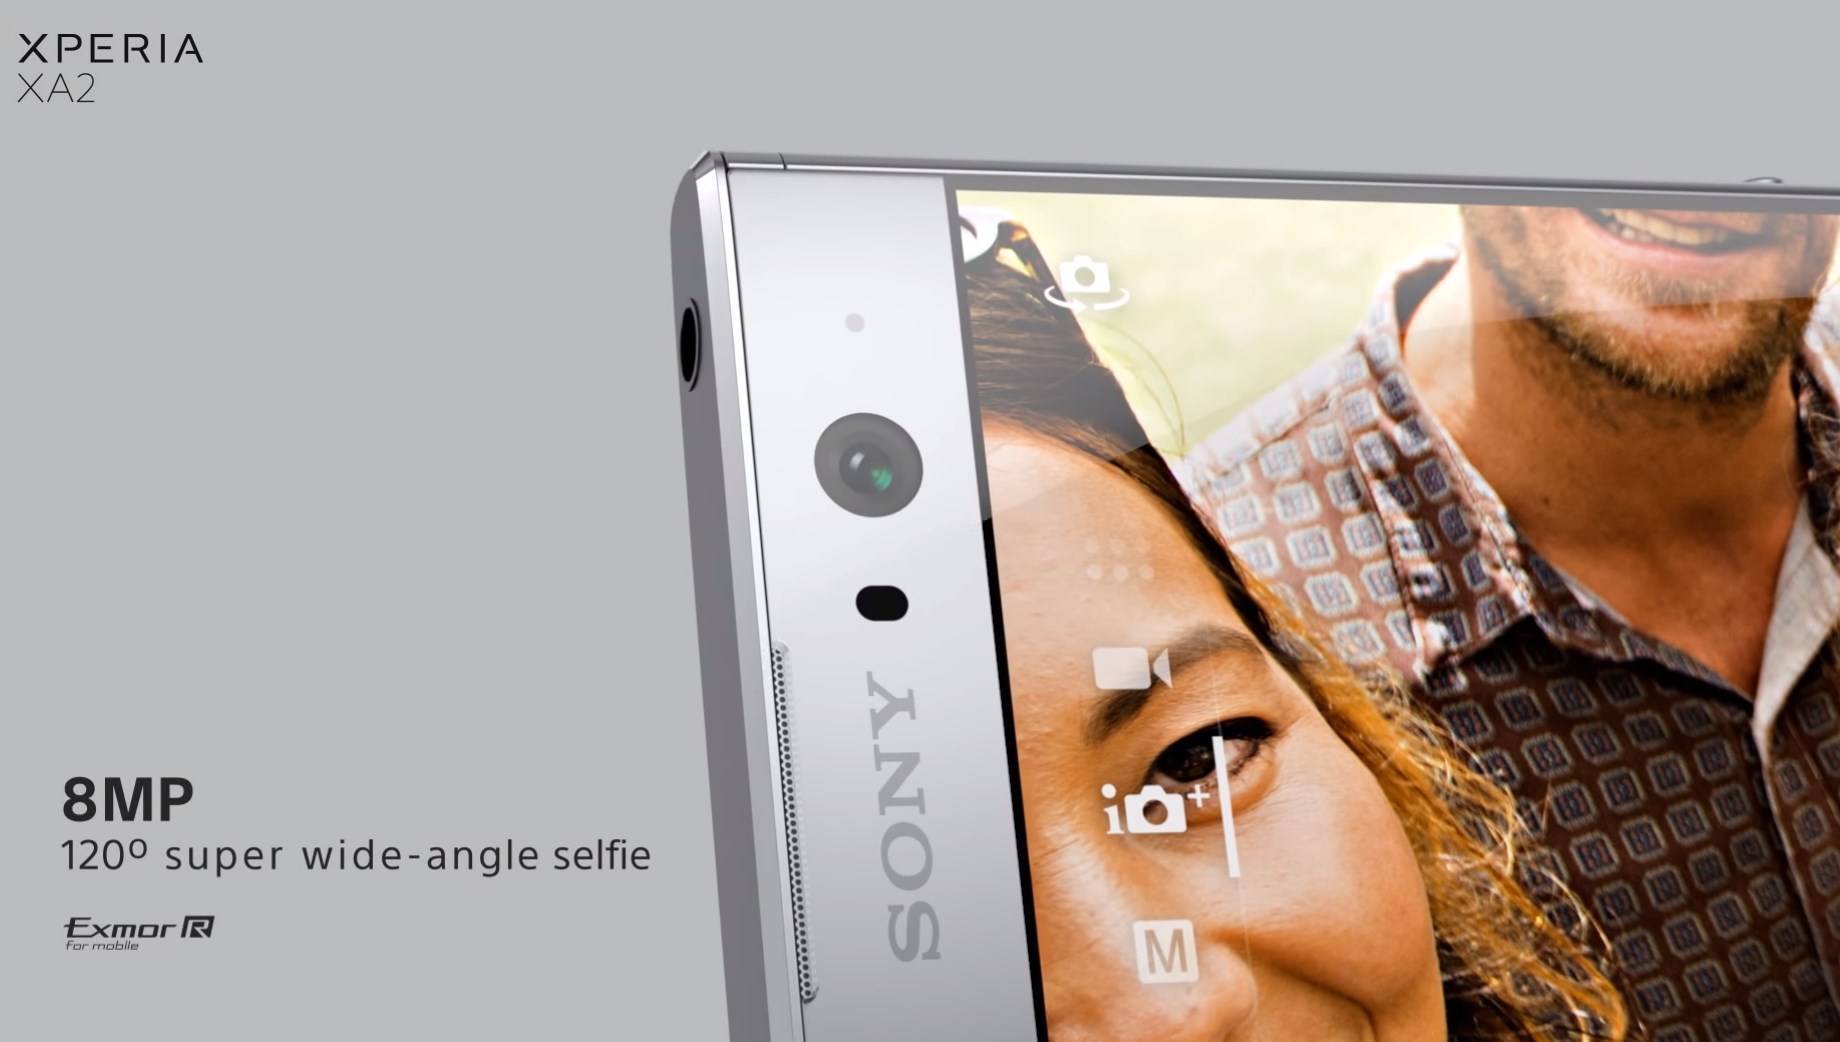 Sony xperia xa2 обзор смартфона | it новости обзоры новых гаджетов